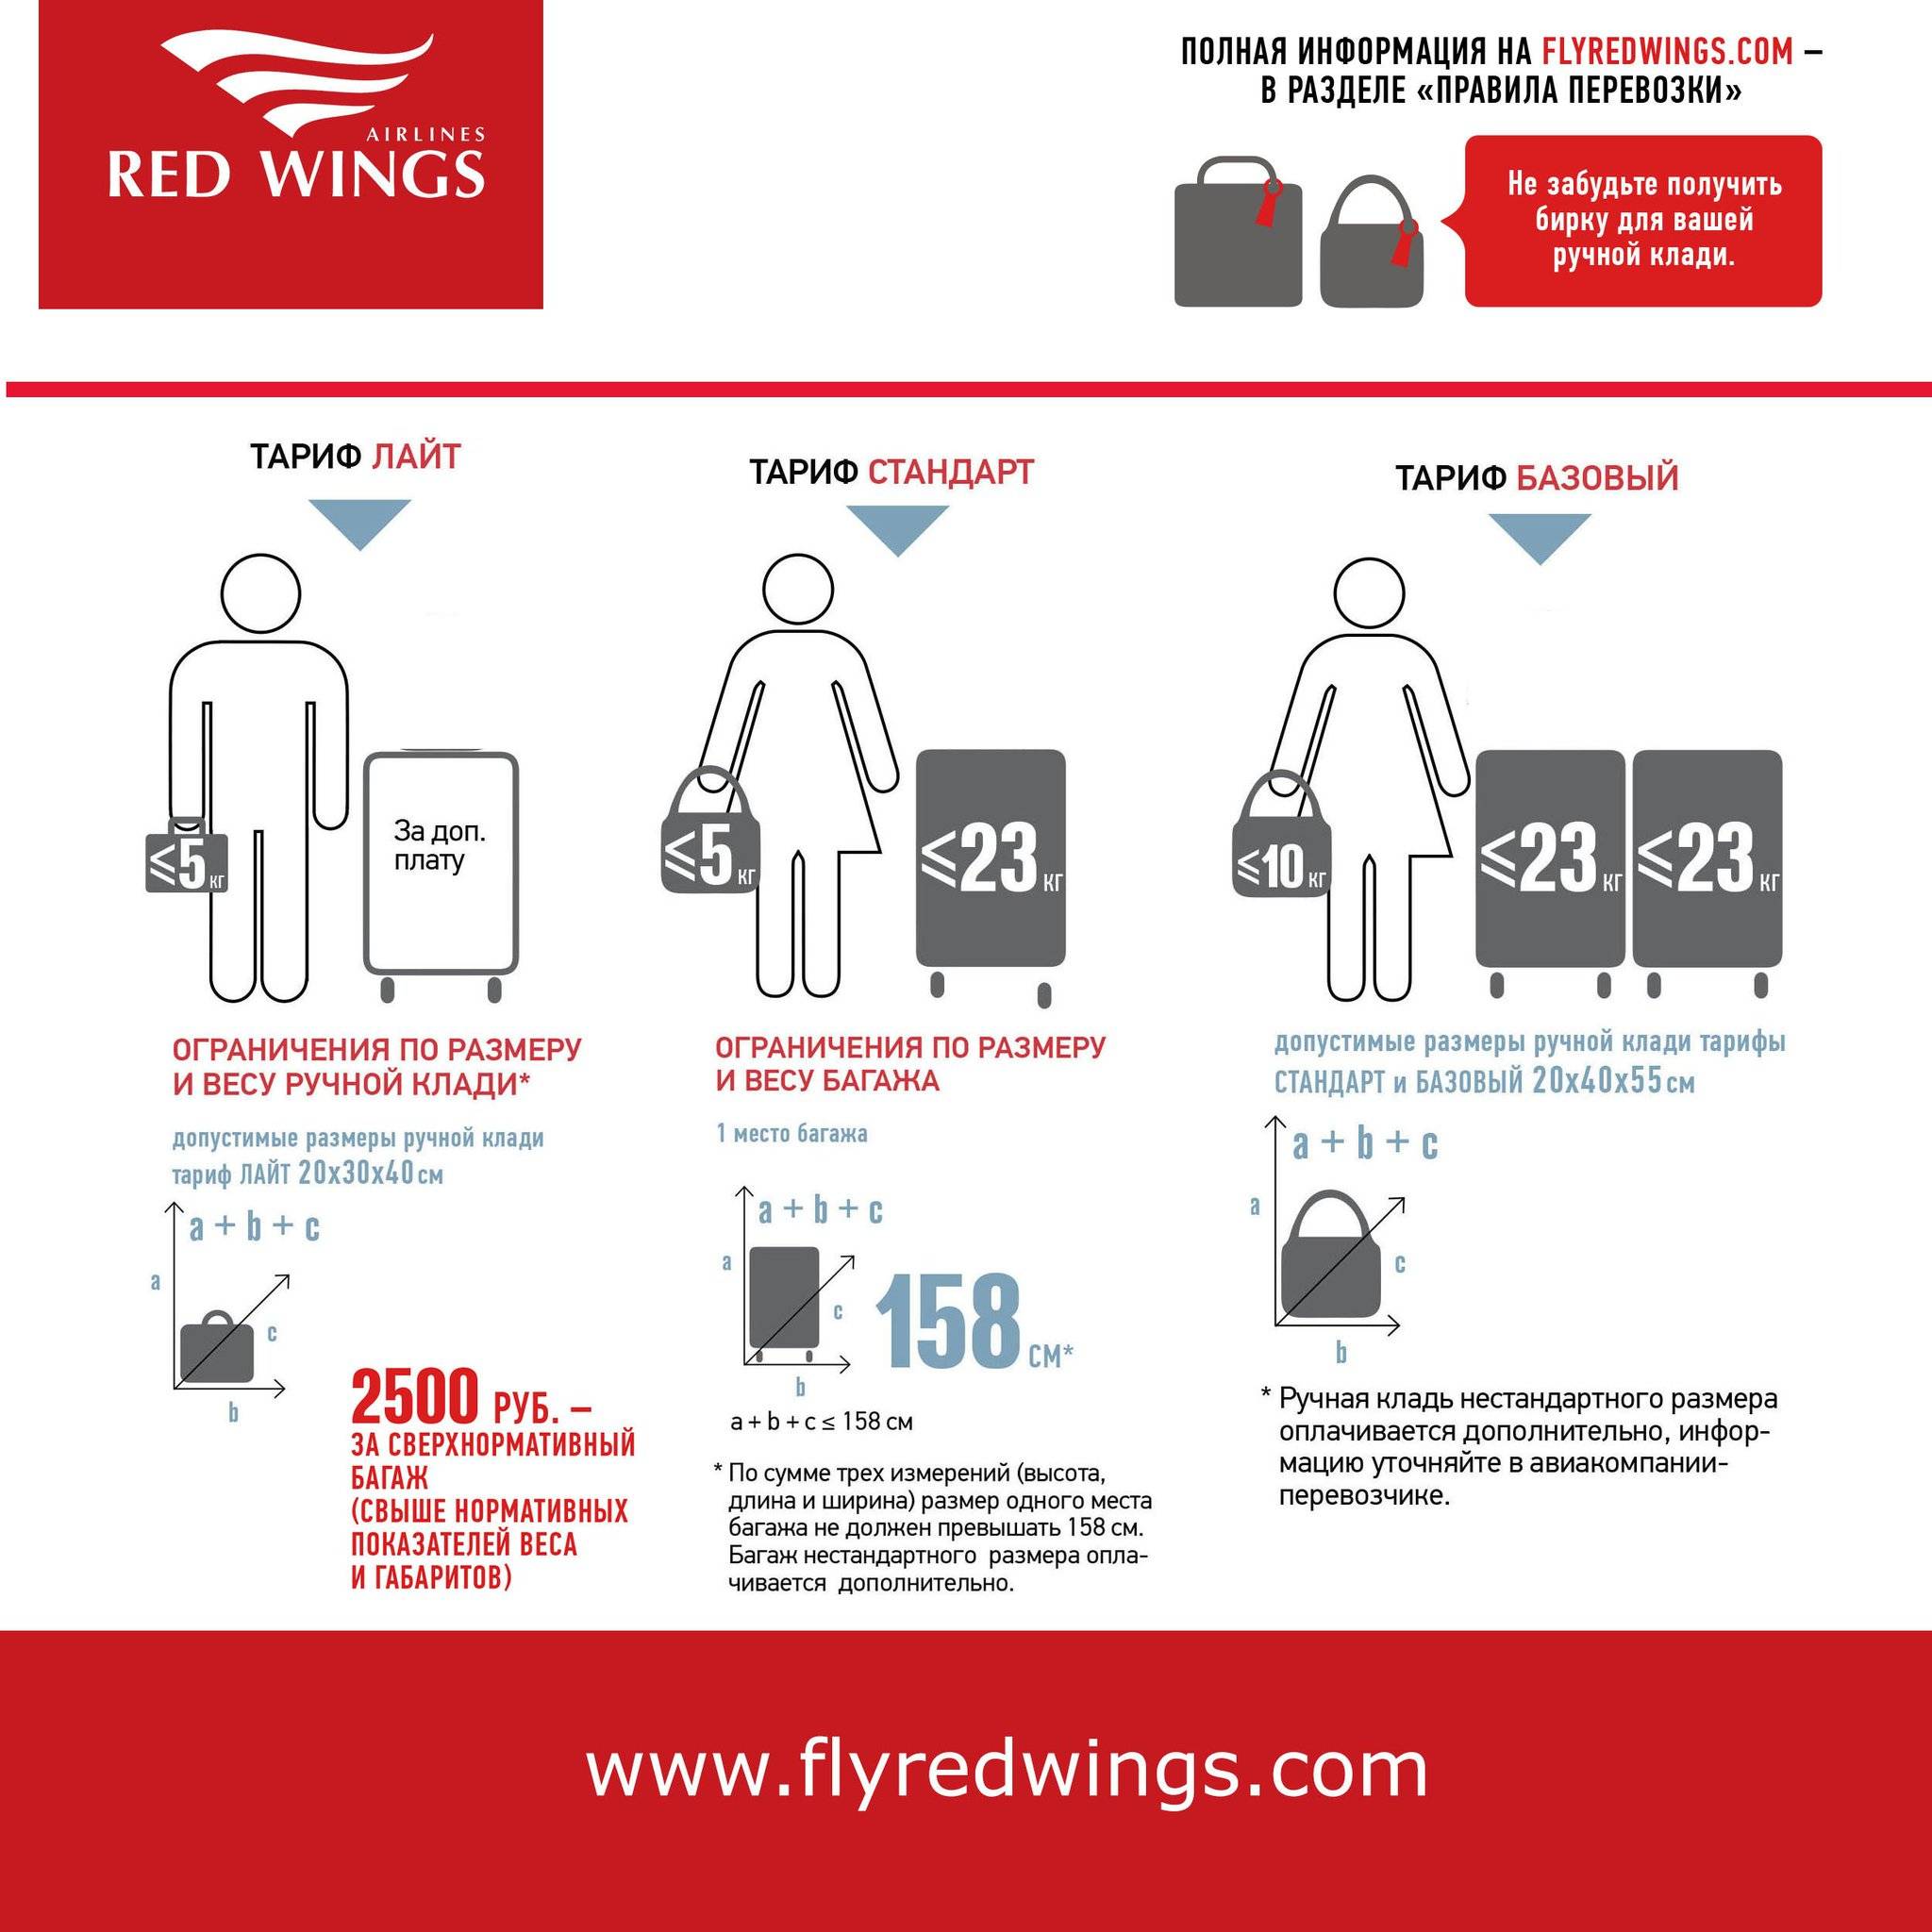 Как перевозить багаж и ручную кладь самолетом ред вингс: правила, нормы, тарифы